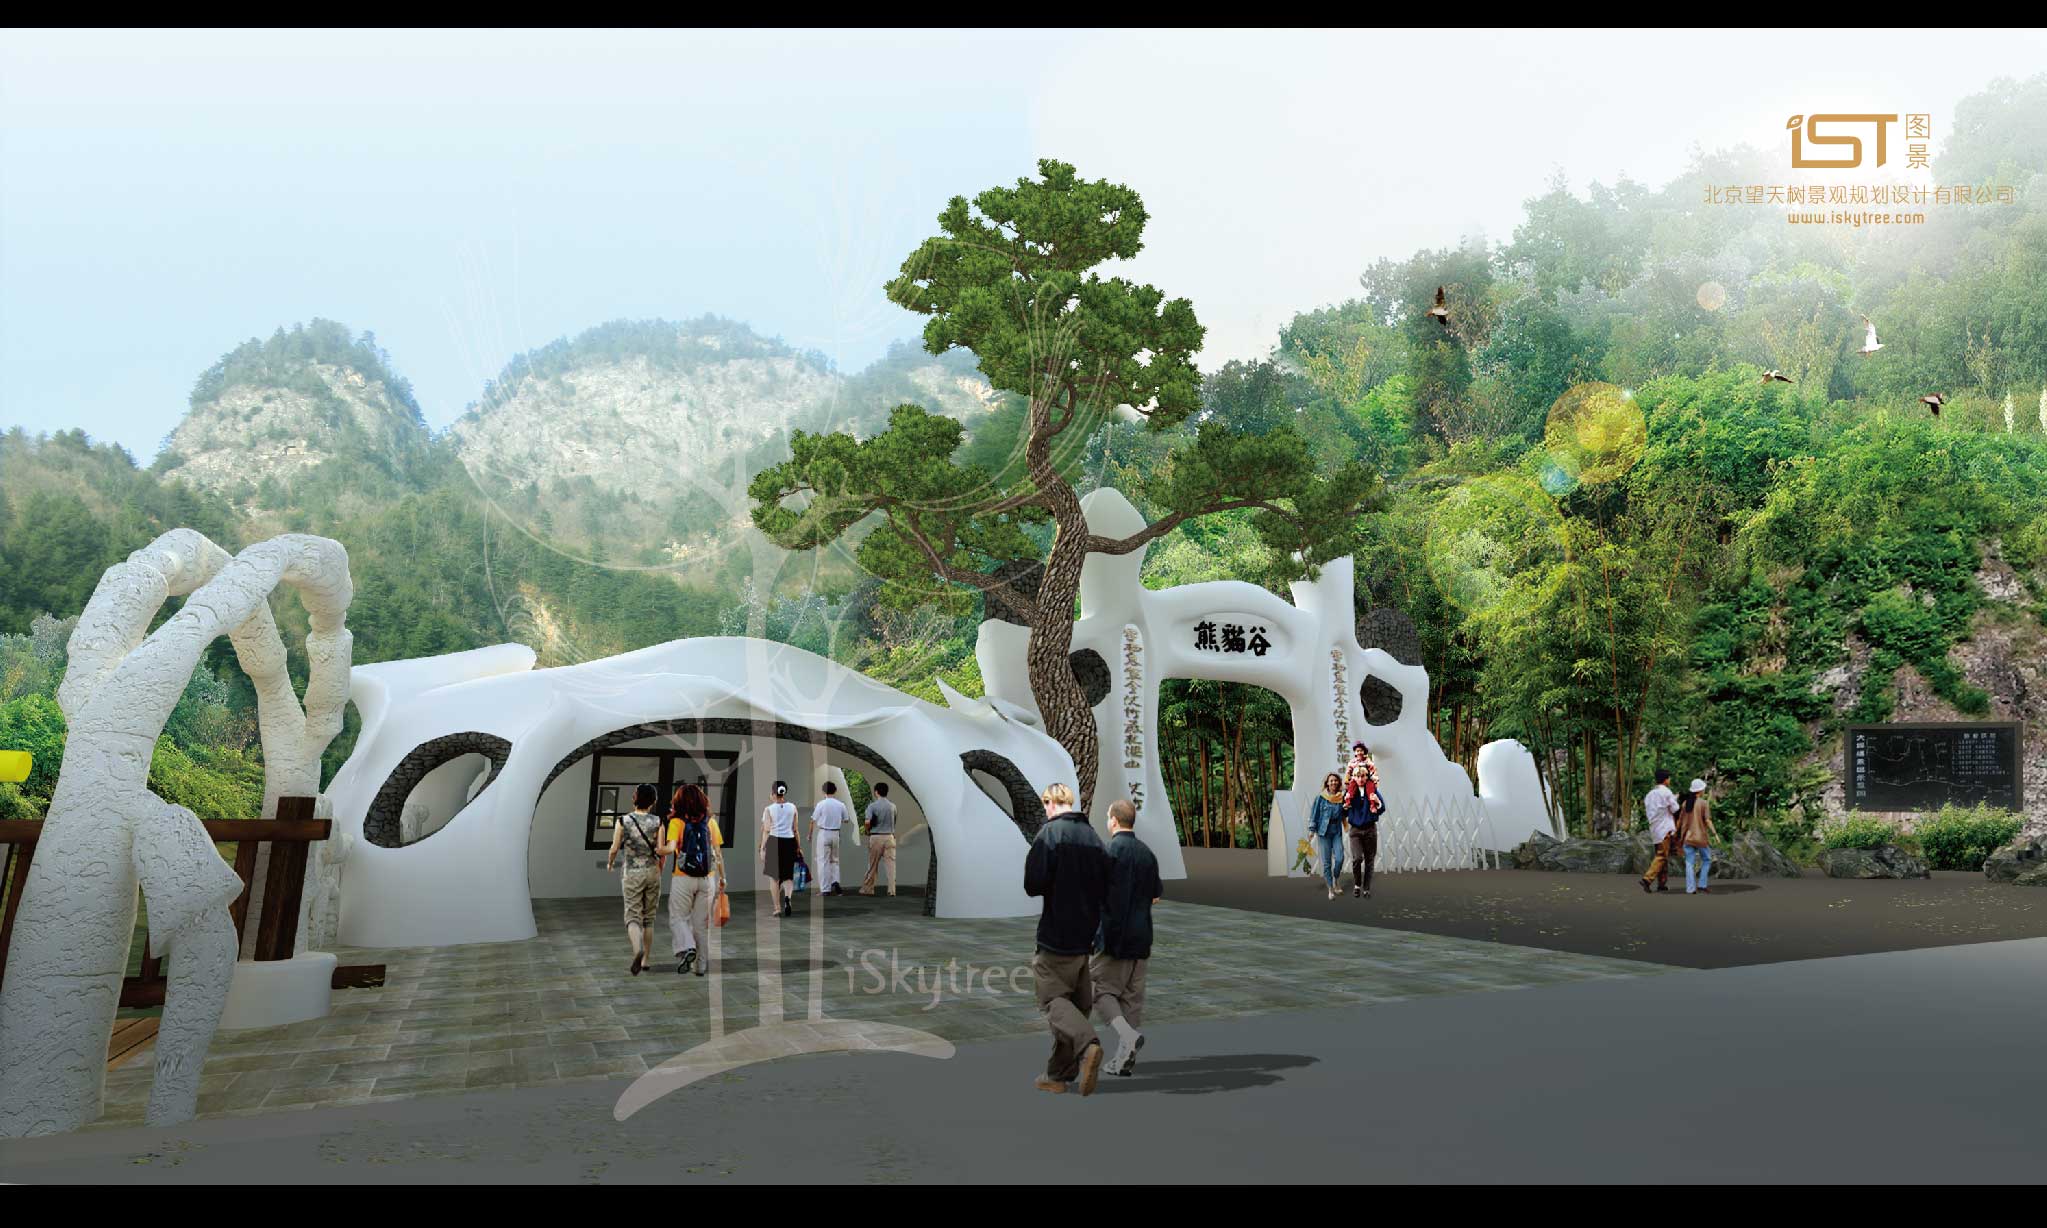 熊貓谷景區主入口大門設計方案效果表現